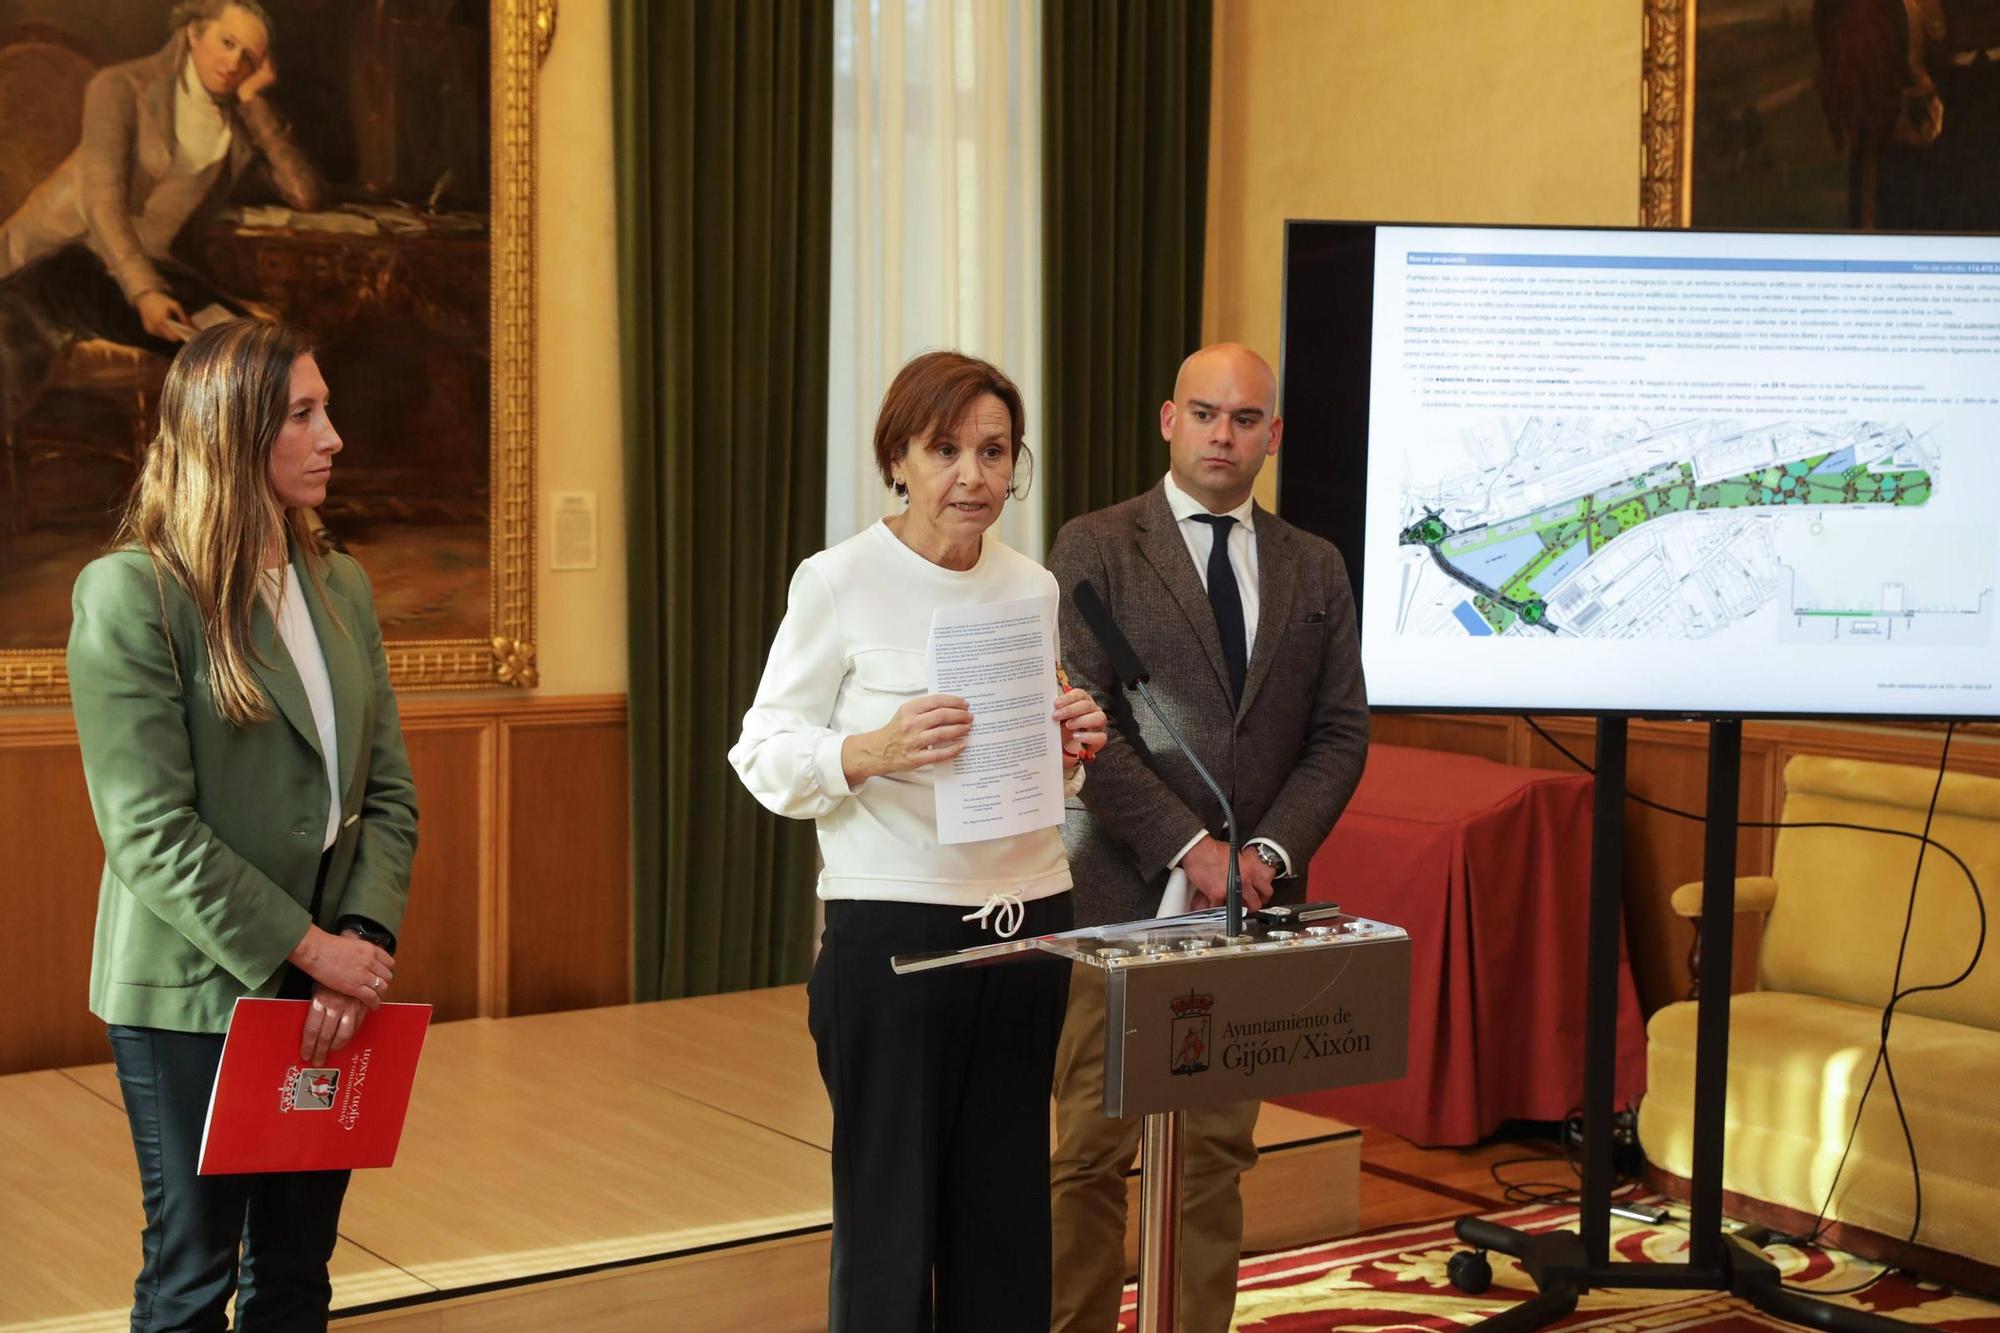 La comparecencia de Moriyón tras la reunión de Gijón al Norte, en imágenes